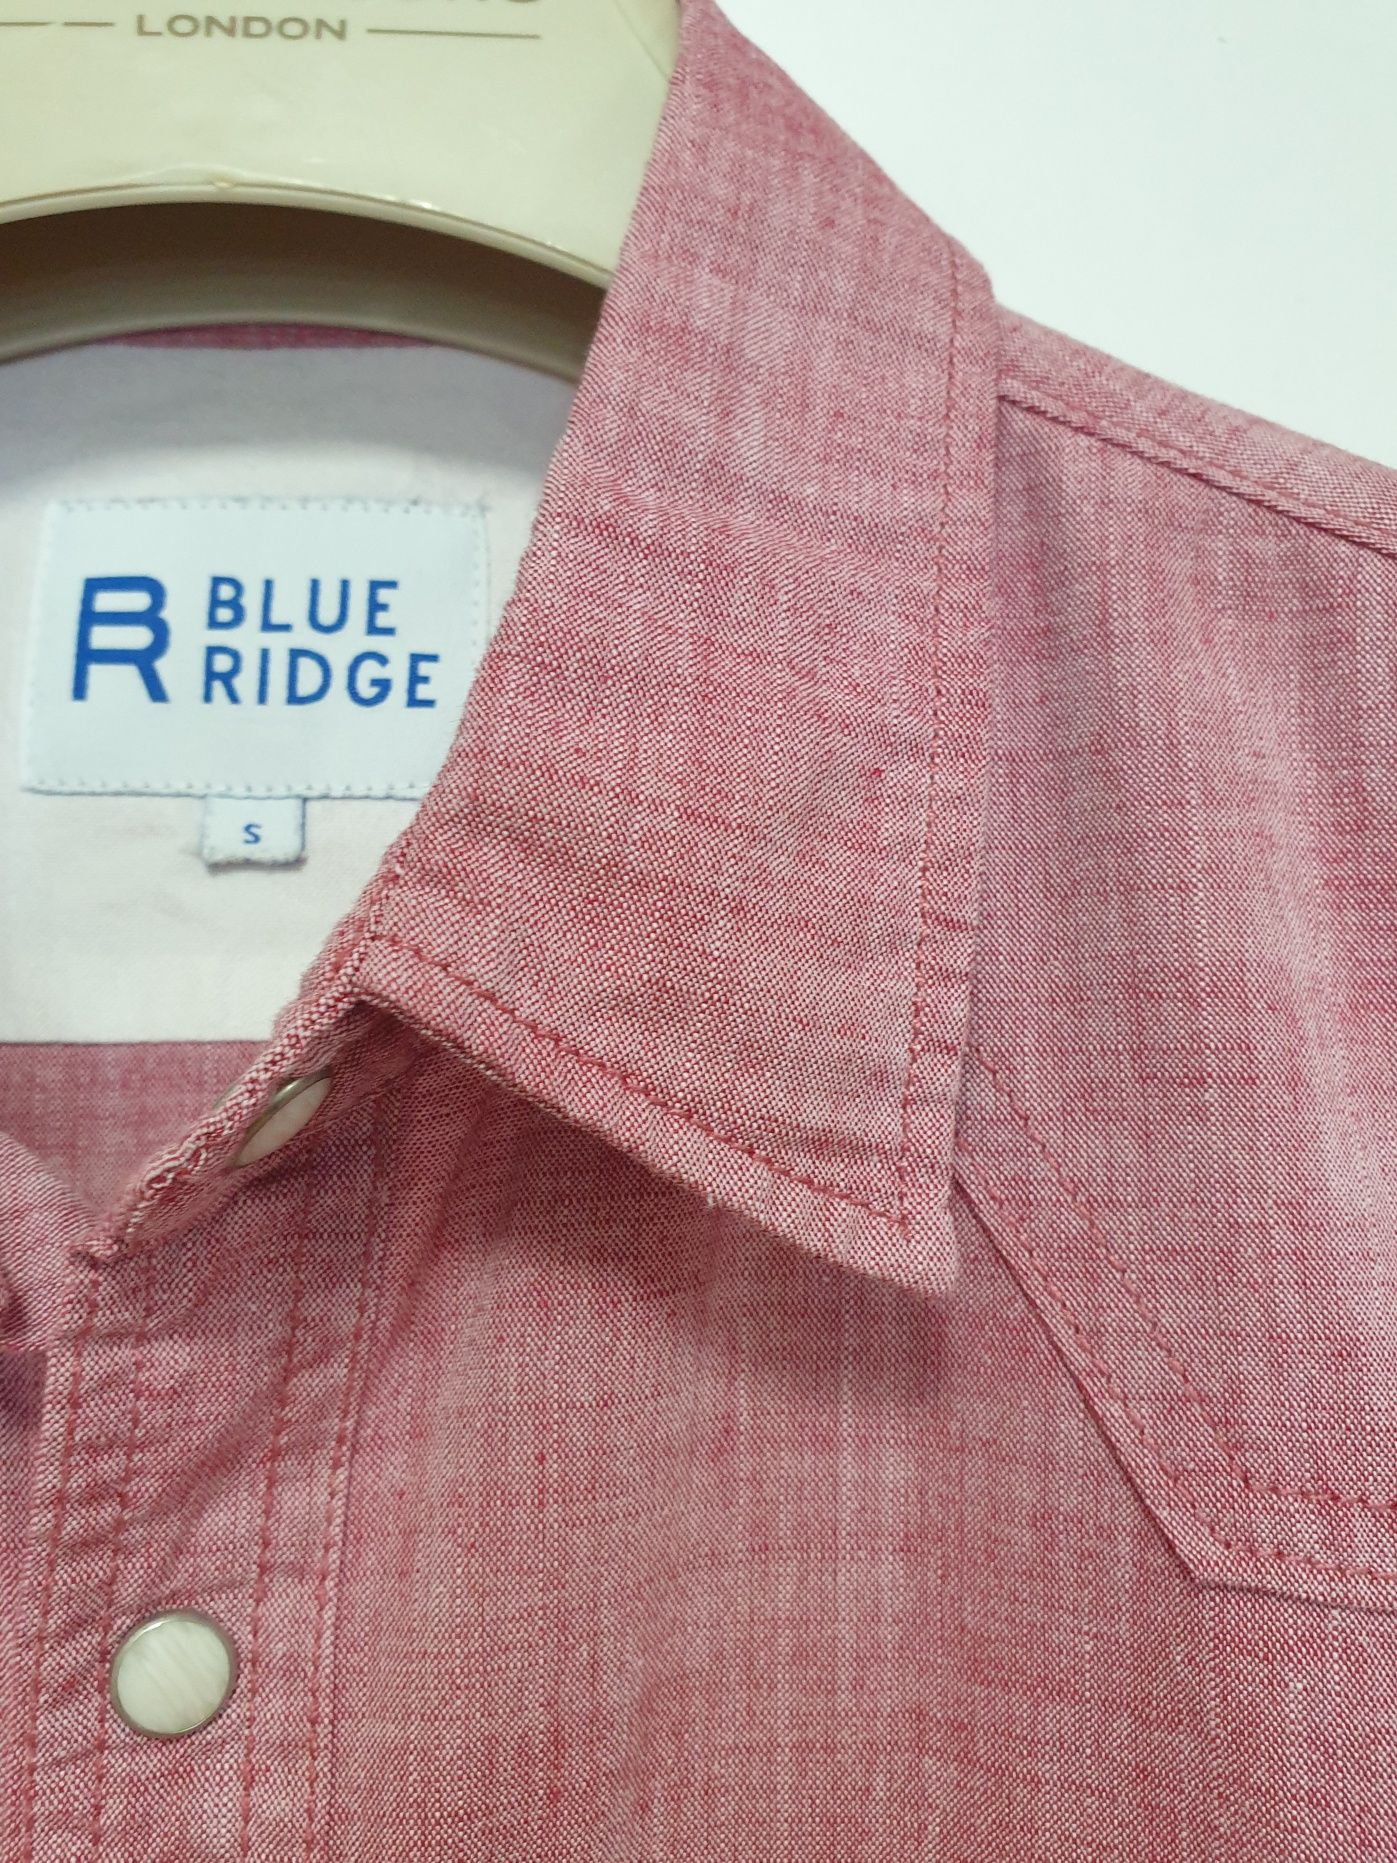 Blue Ridge - S - 2 види - верхня Сорочка чоловіча рубашка мужская